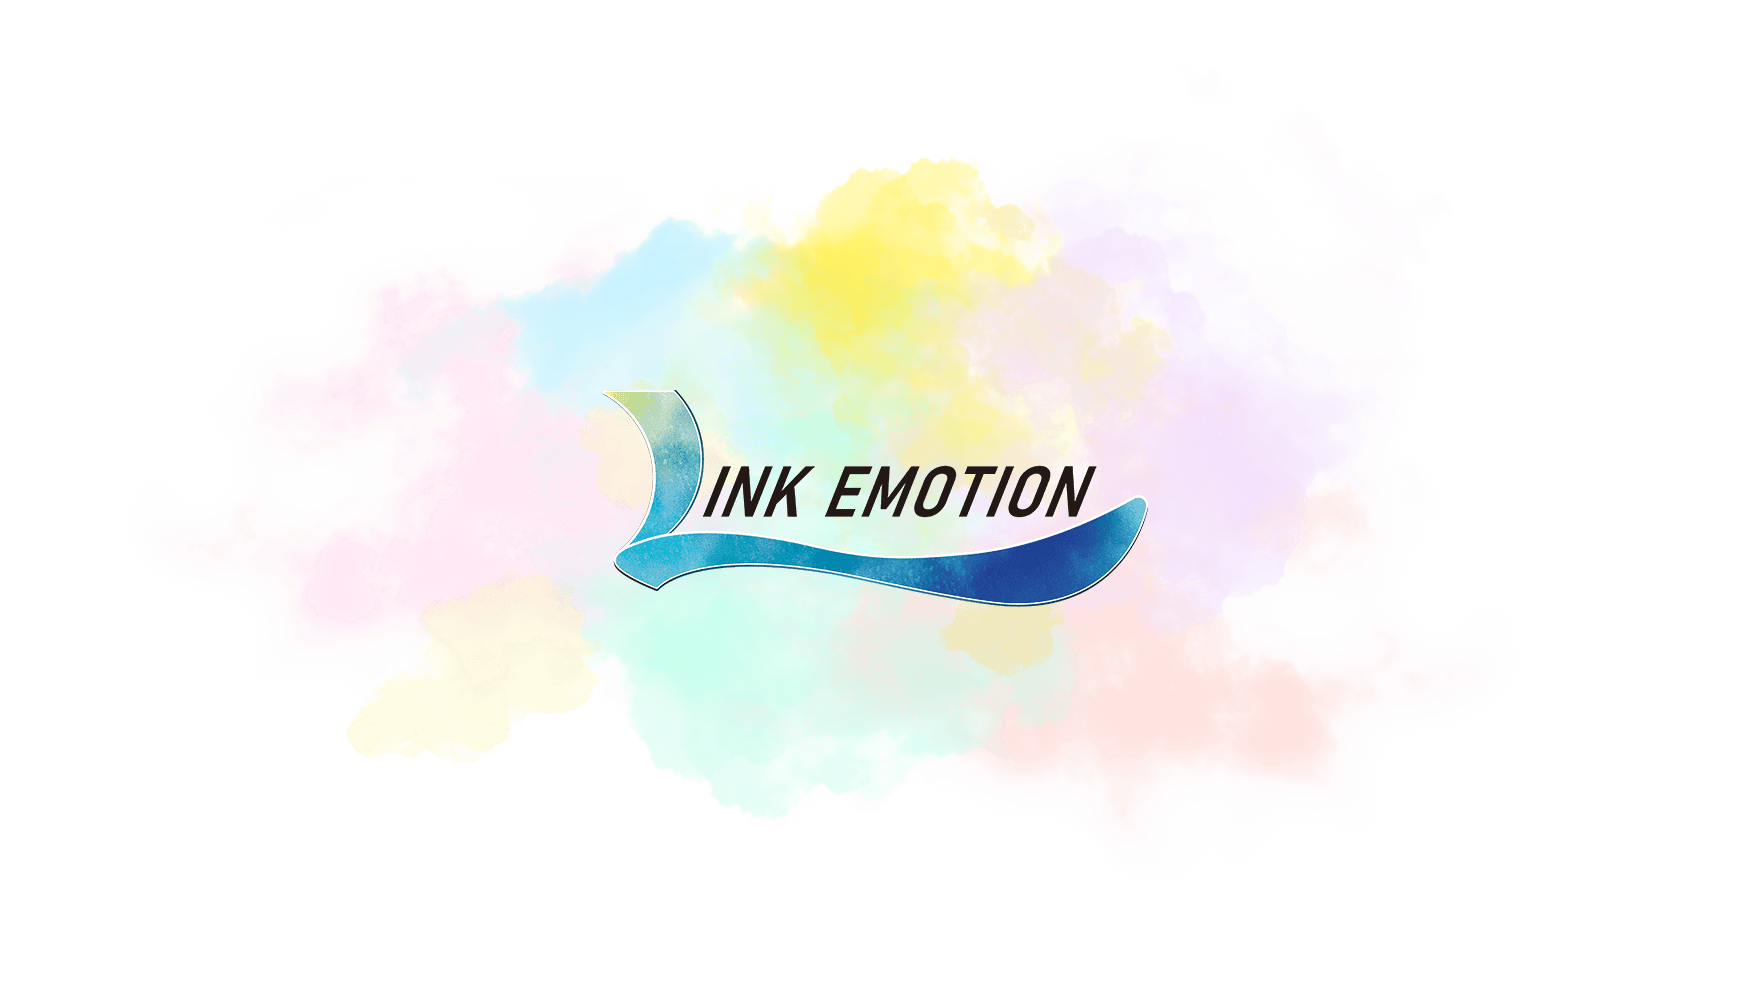 LINK EMOTION